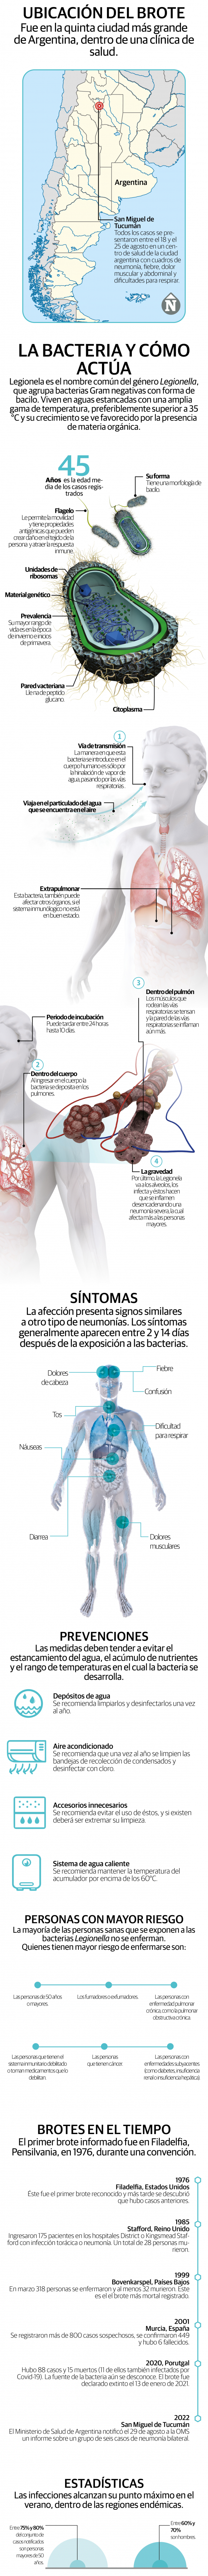 Legionella, cómo es la bacteria causante de las neumonías en Argentina